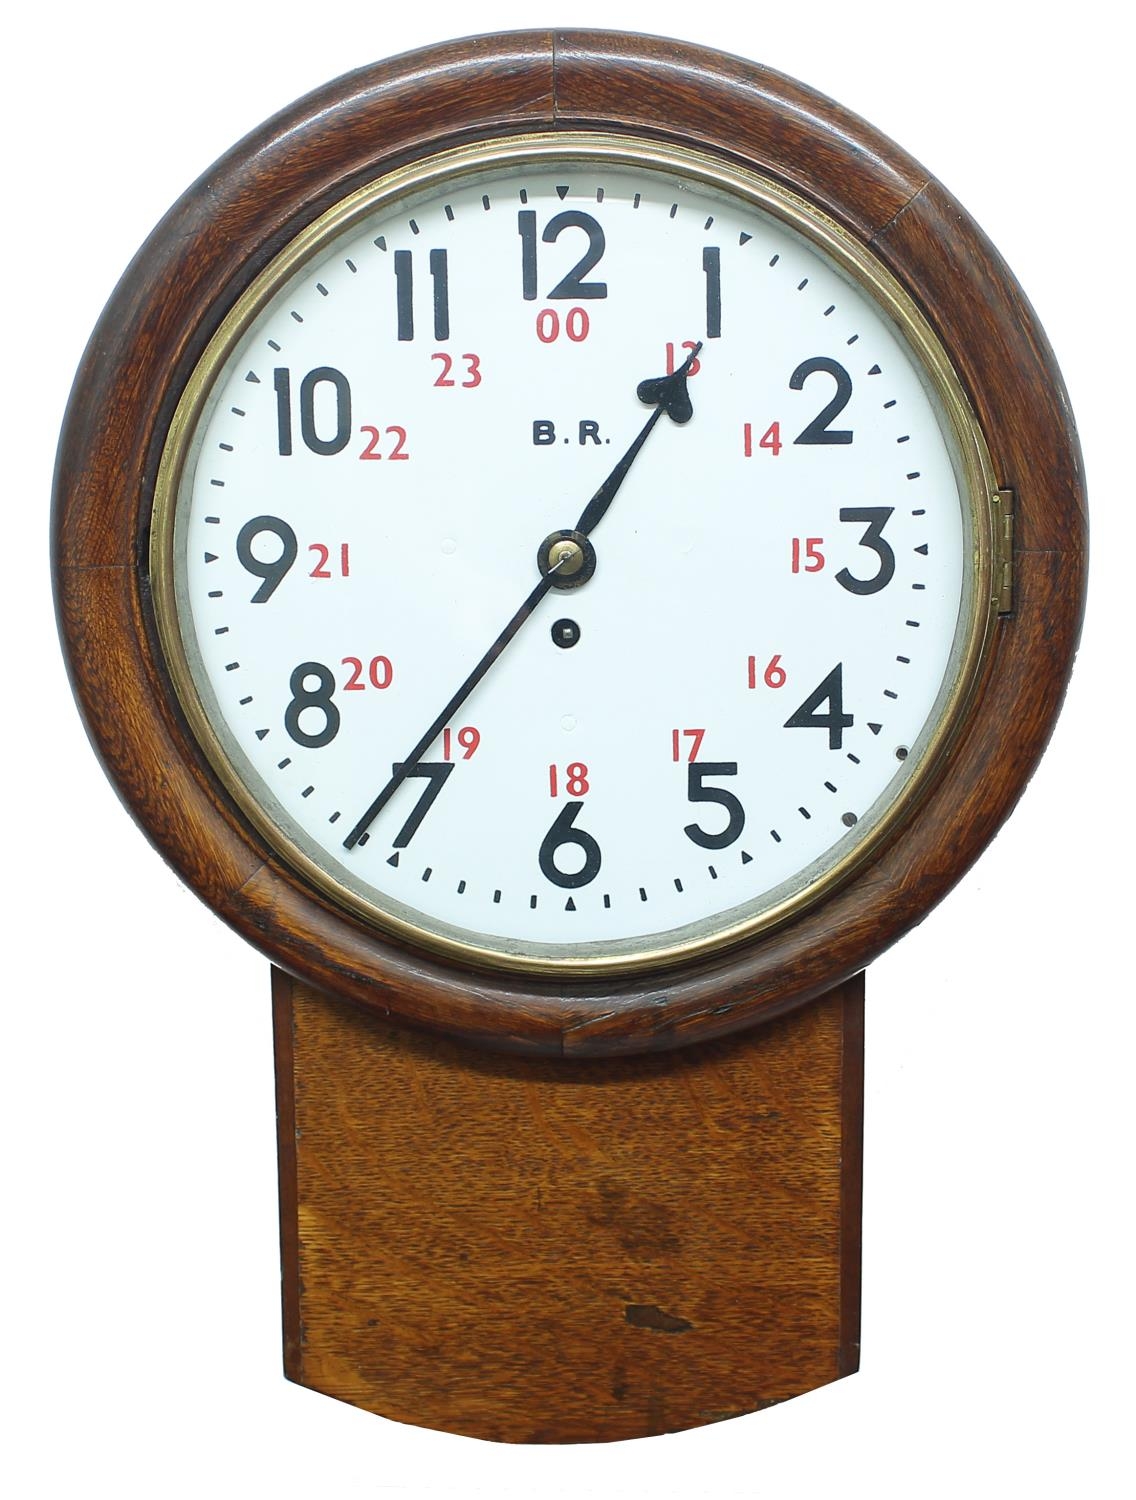 British Railway (Western Region) oak 12" drop dial wall clock, the dial inscribed B.R. with twenty